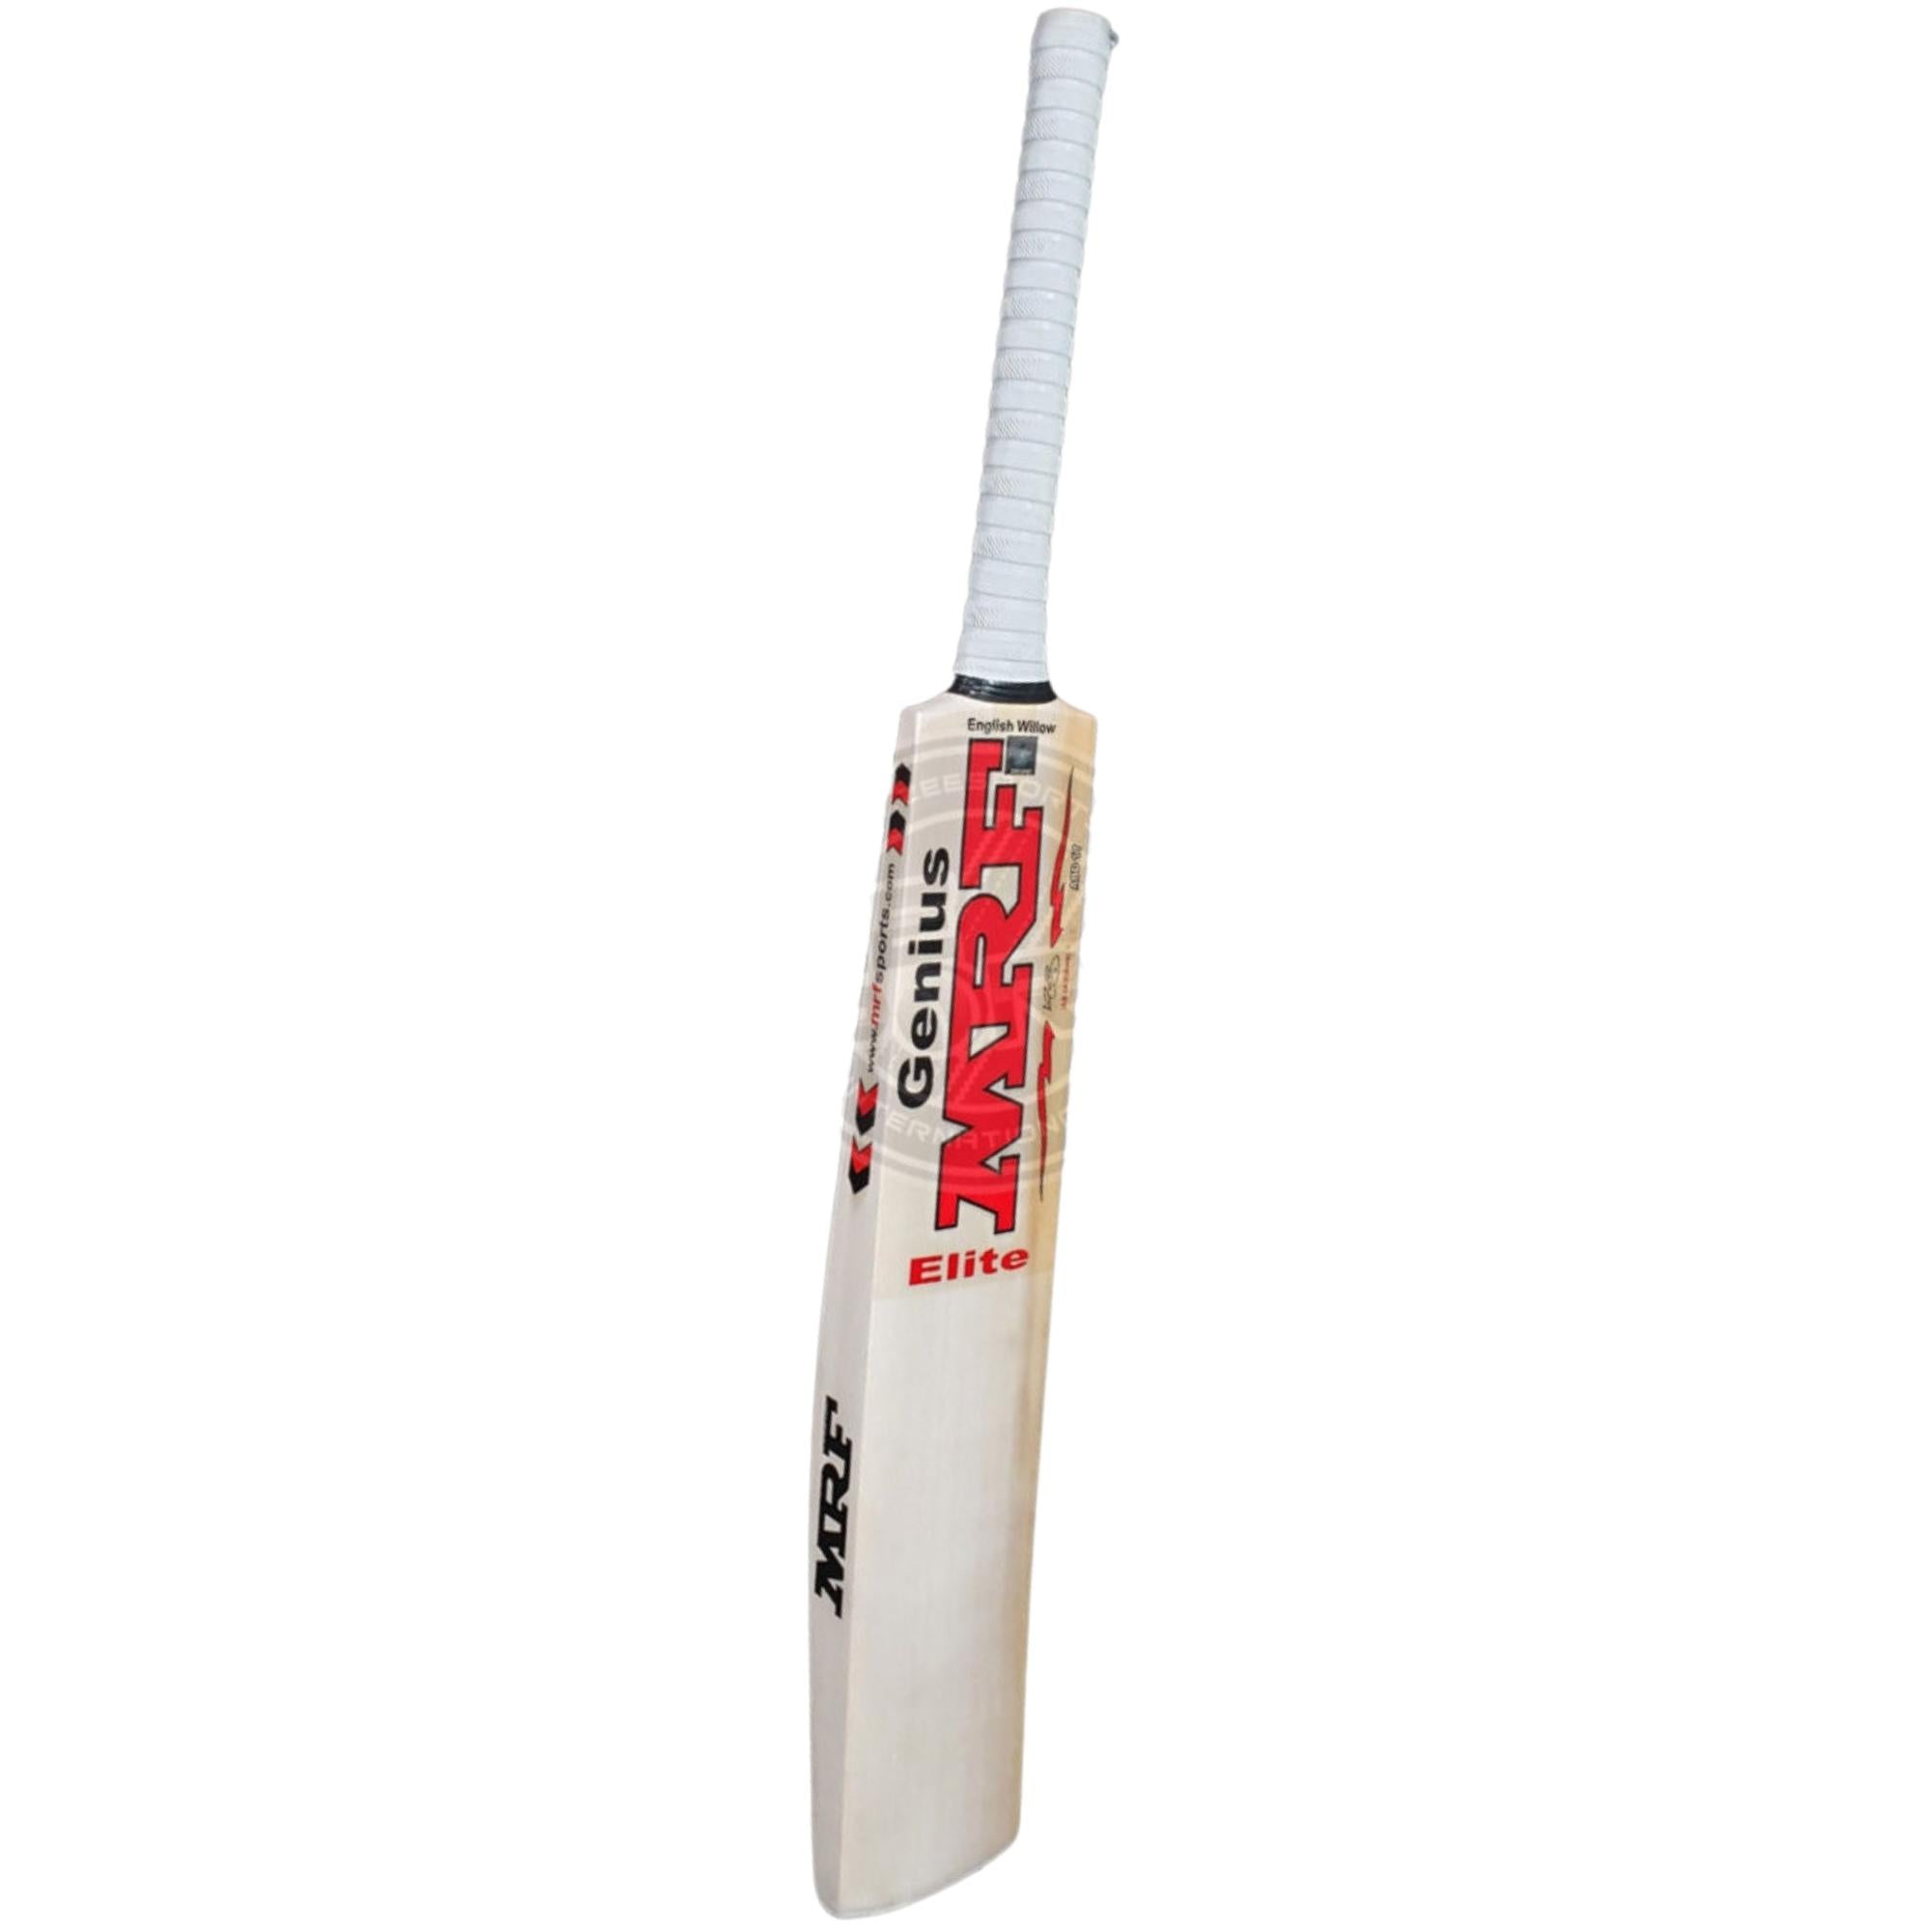 MRF Genuis Elite - AB de Villiers Player's Cricket Bat